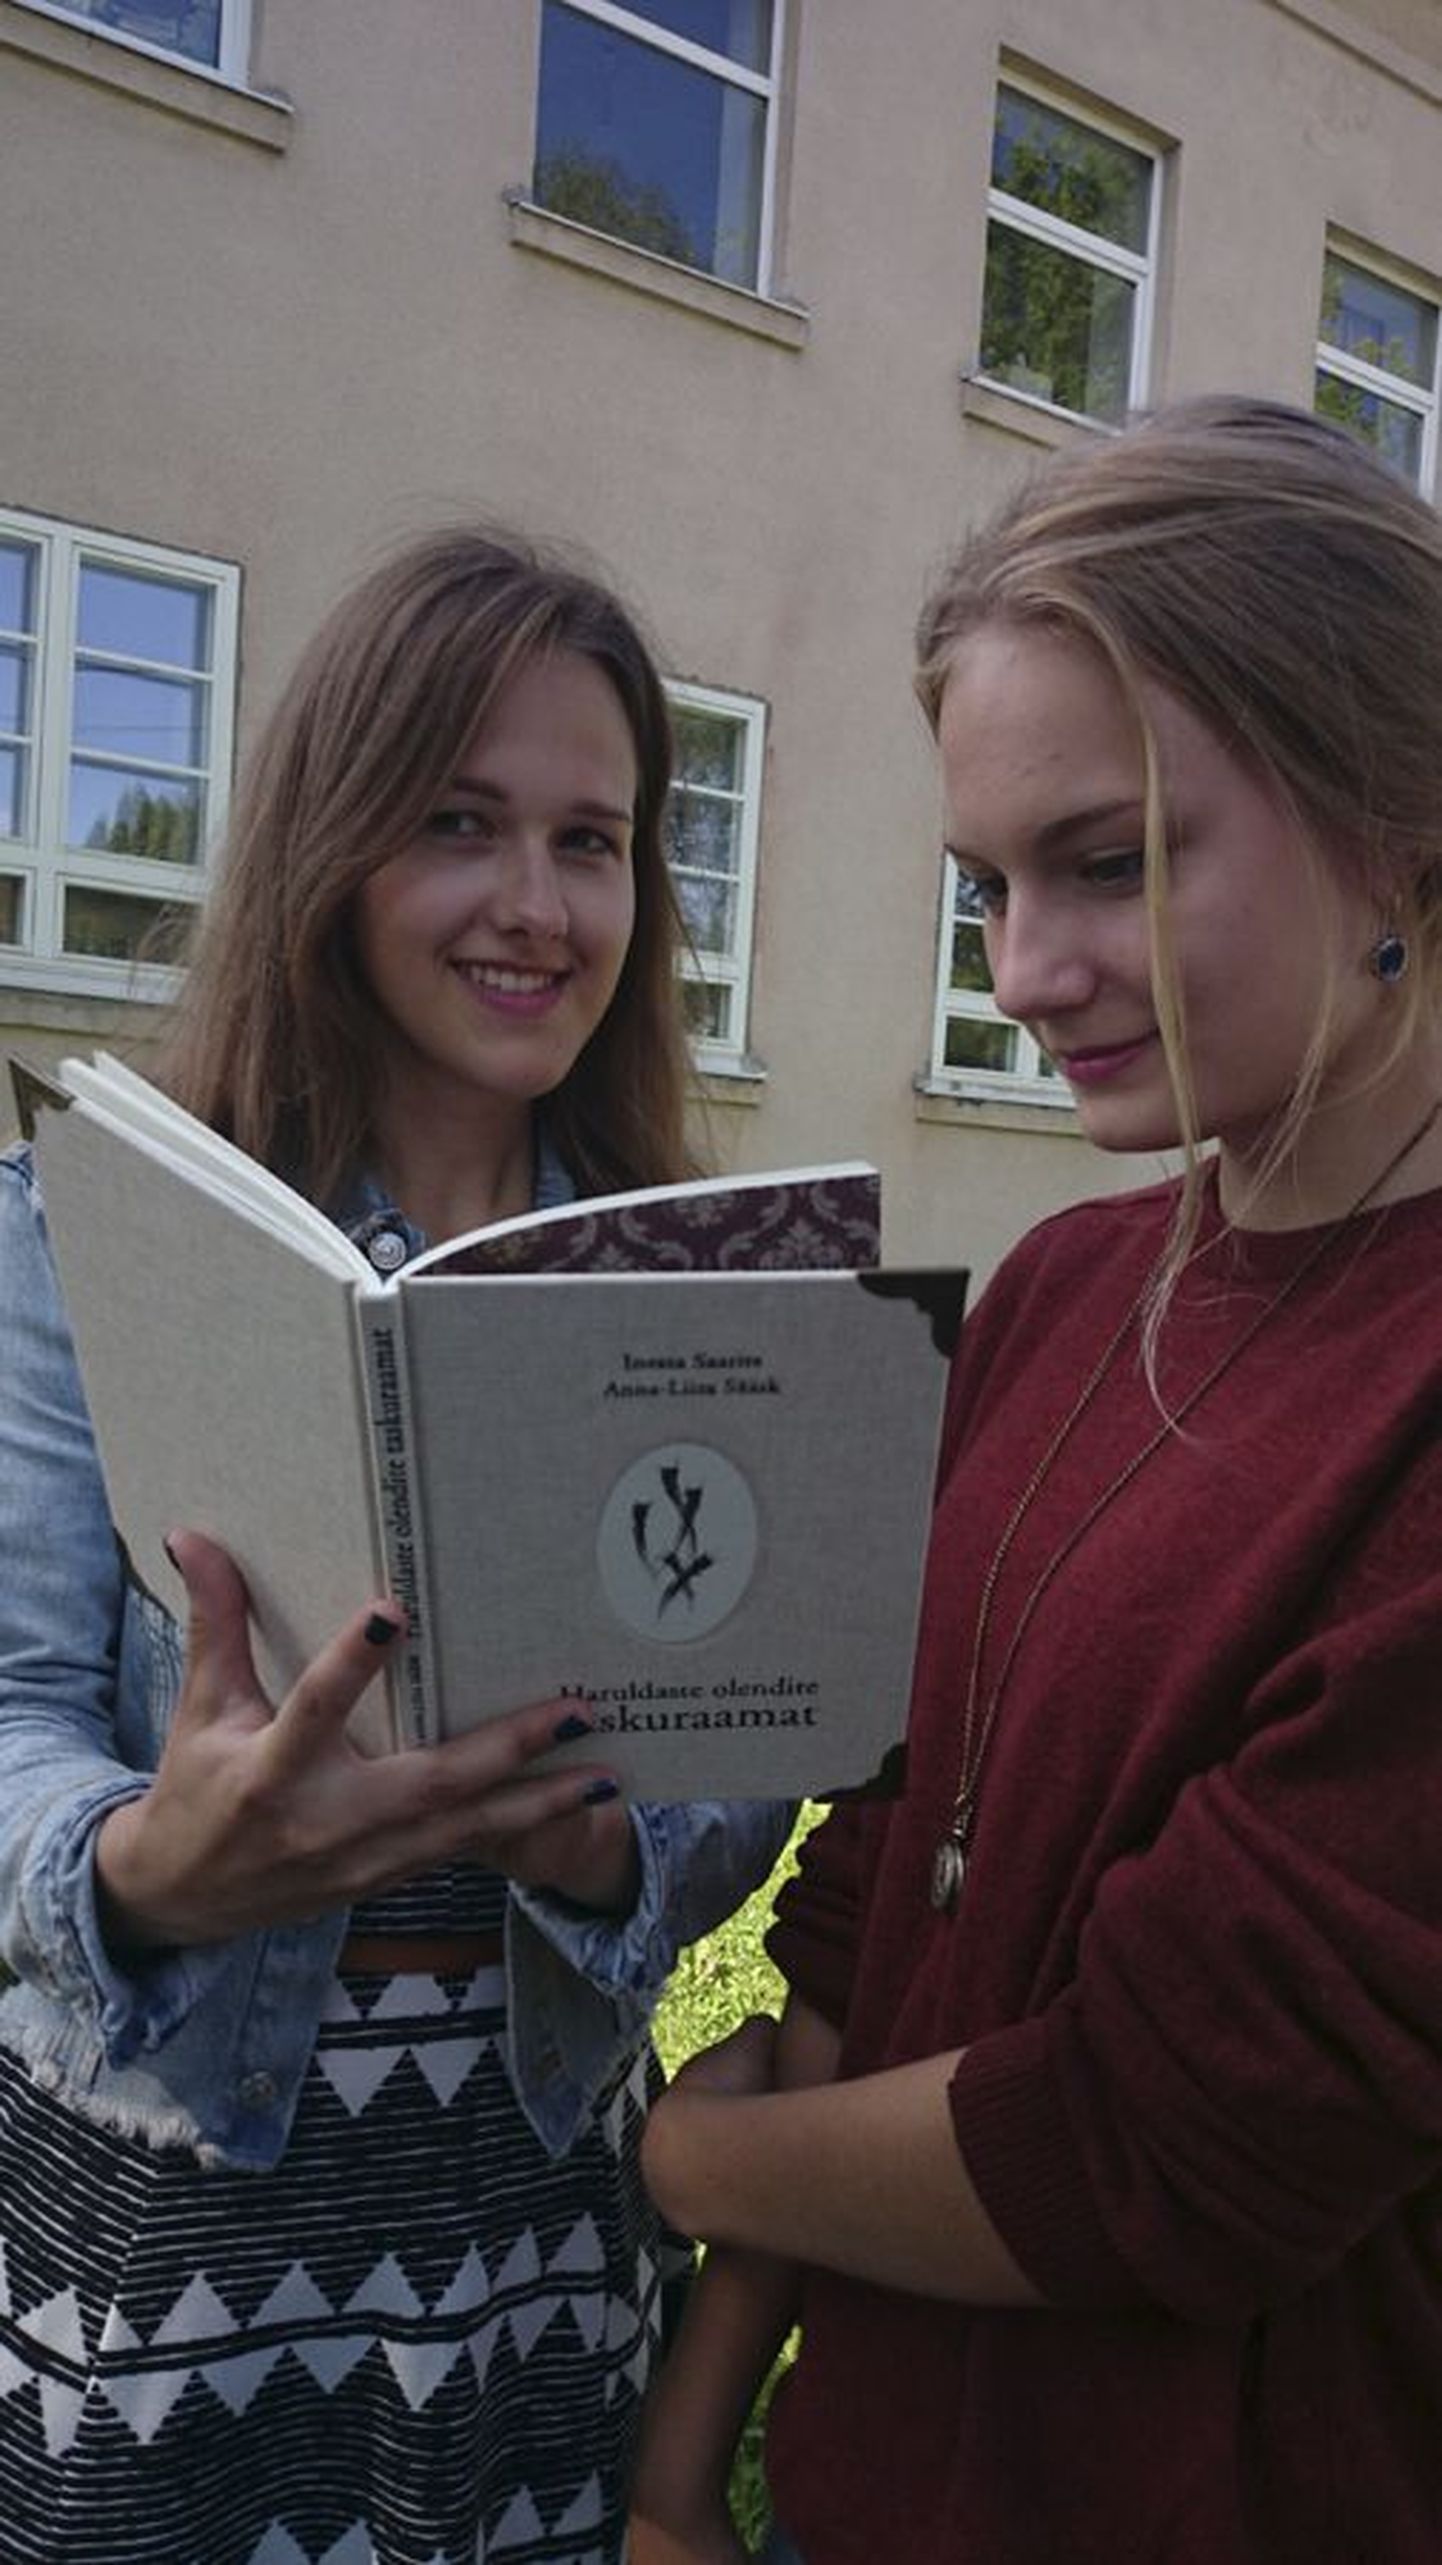 Inessa Saarits ja Anna-Liisa Sääsk hoiavad käes oma esimest raamatut, mis sai pealkirjaks «Haruldaste olendite taskuraamat». Kaanel on Kõrrepead, keda võib täiesti tõsimeeli pidada raamatu idee andjateks.